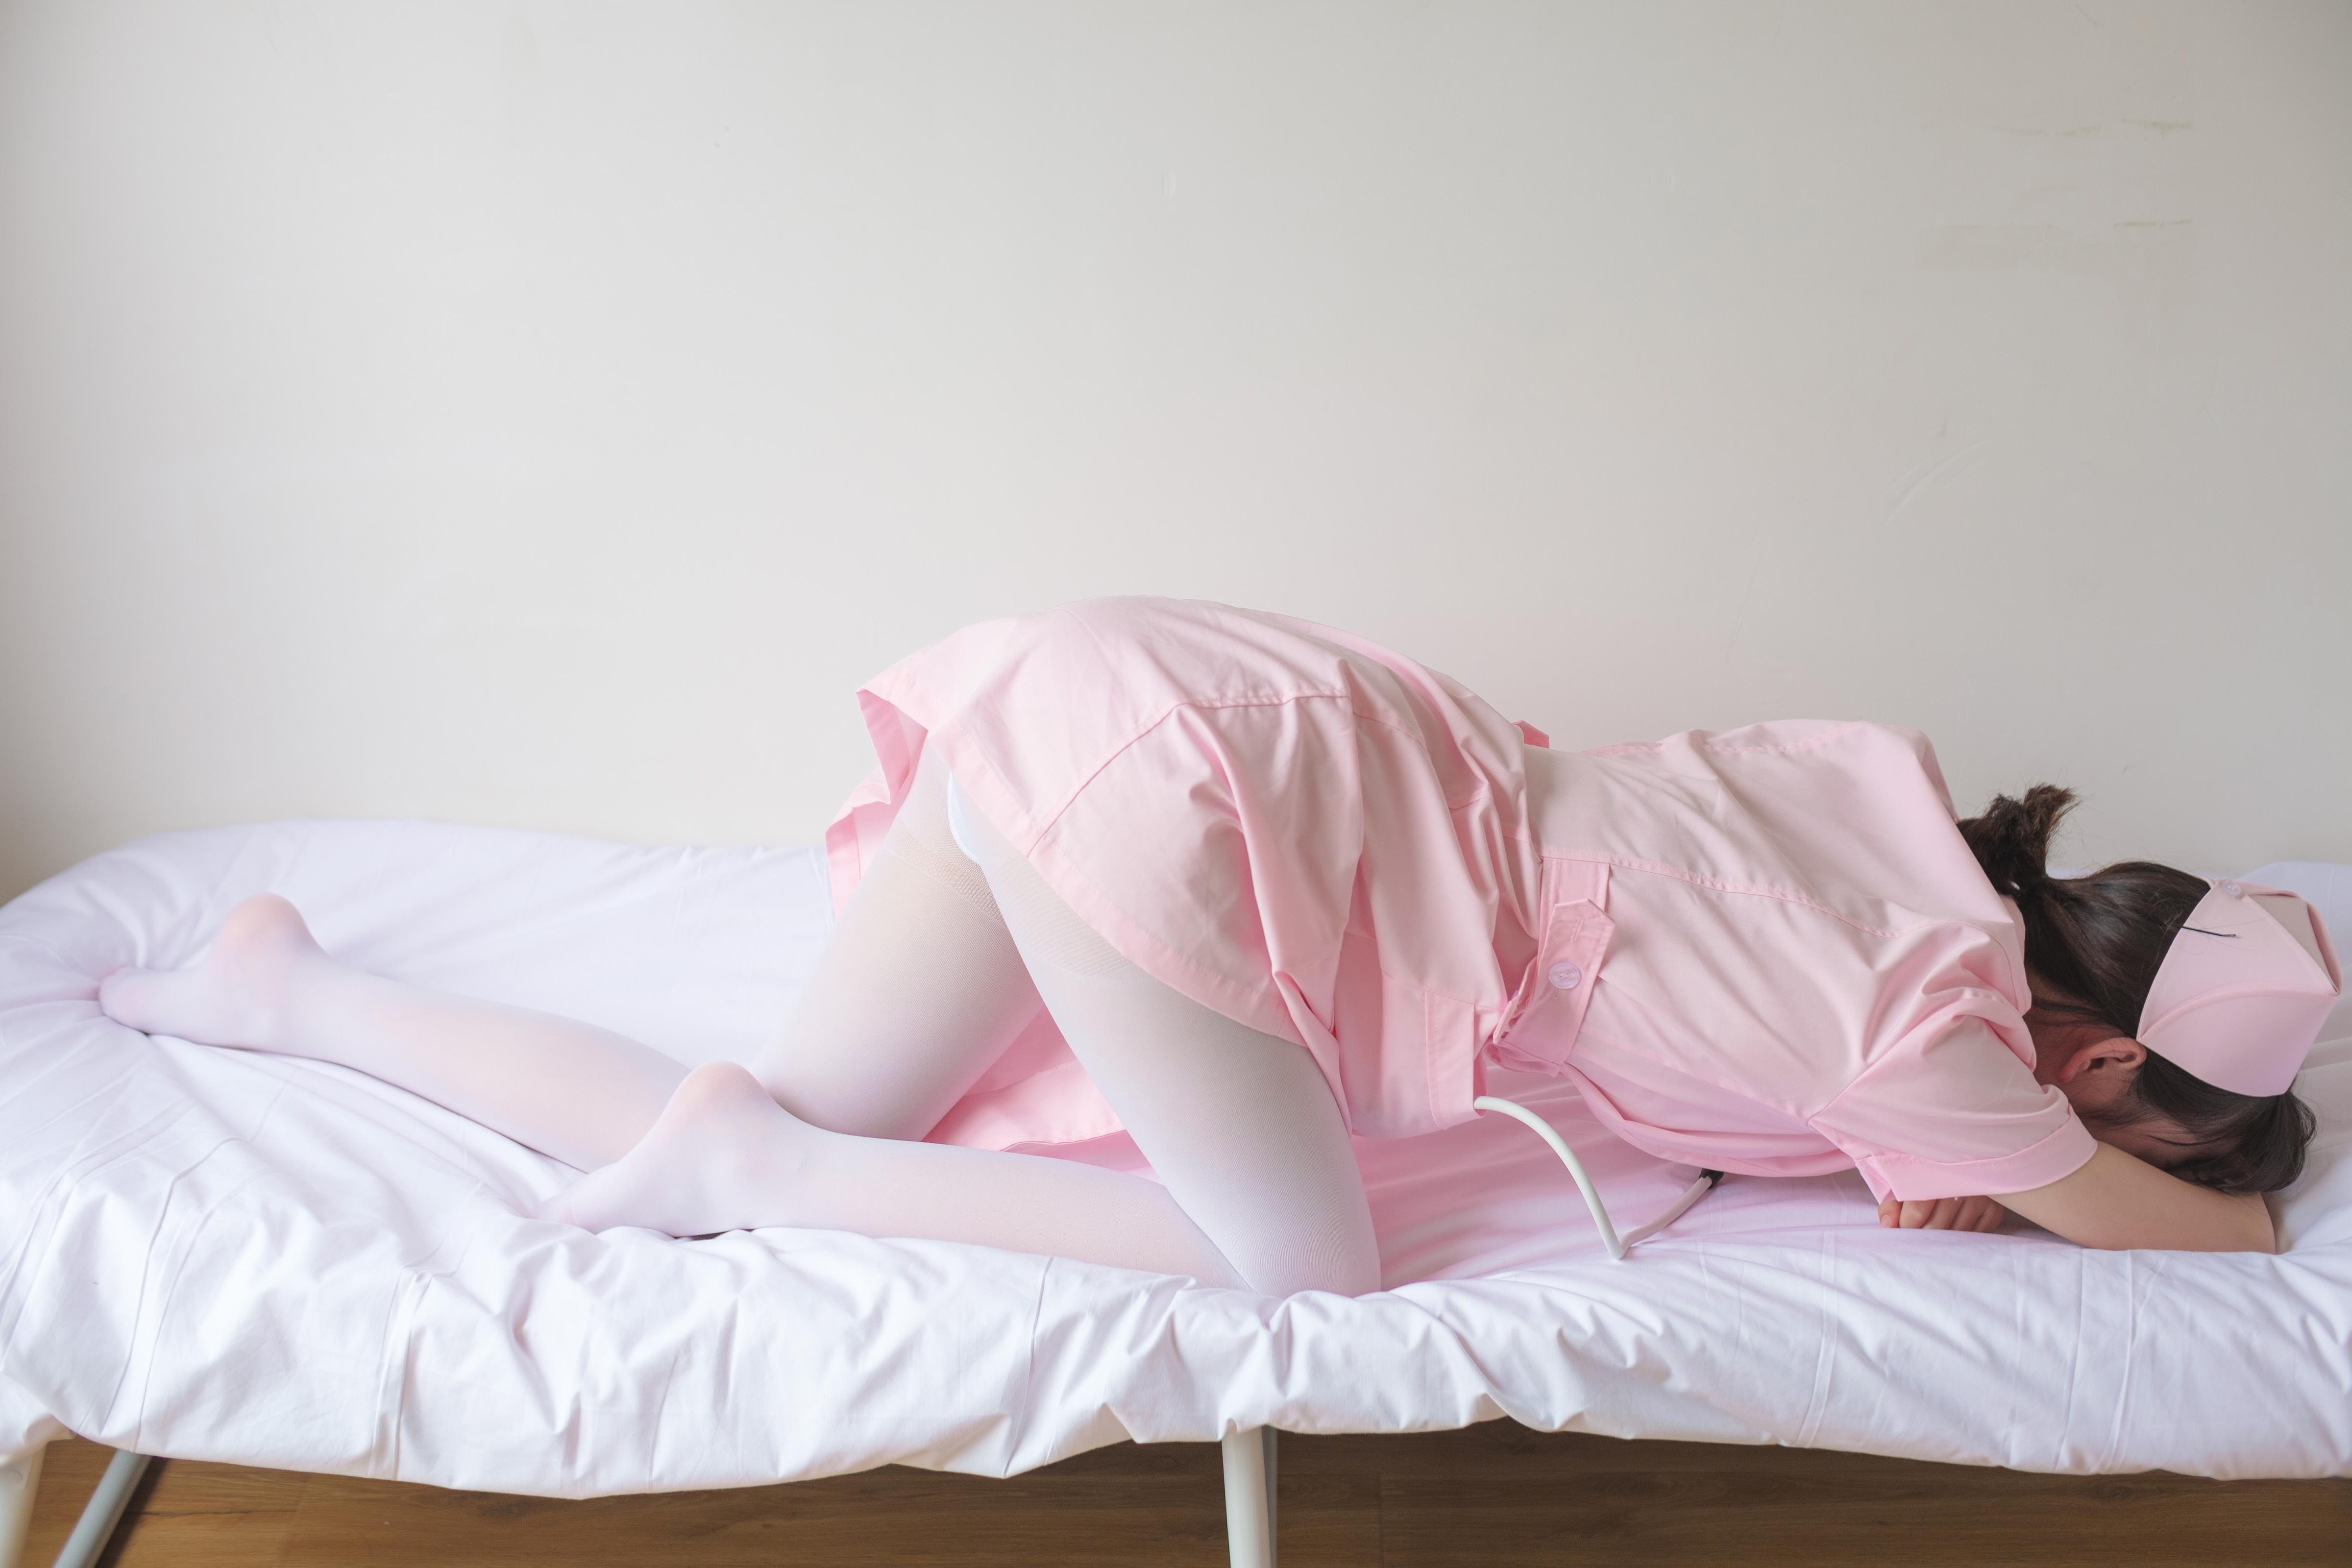 [森萝财团]萝莉X-021 粉色性感女护士制服加白色丝袜美腿玉足私房写真集,